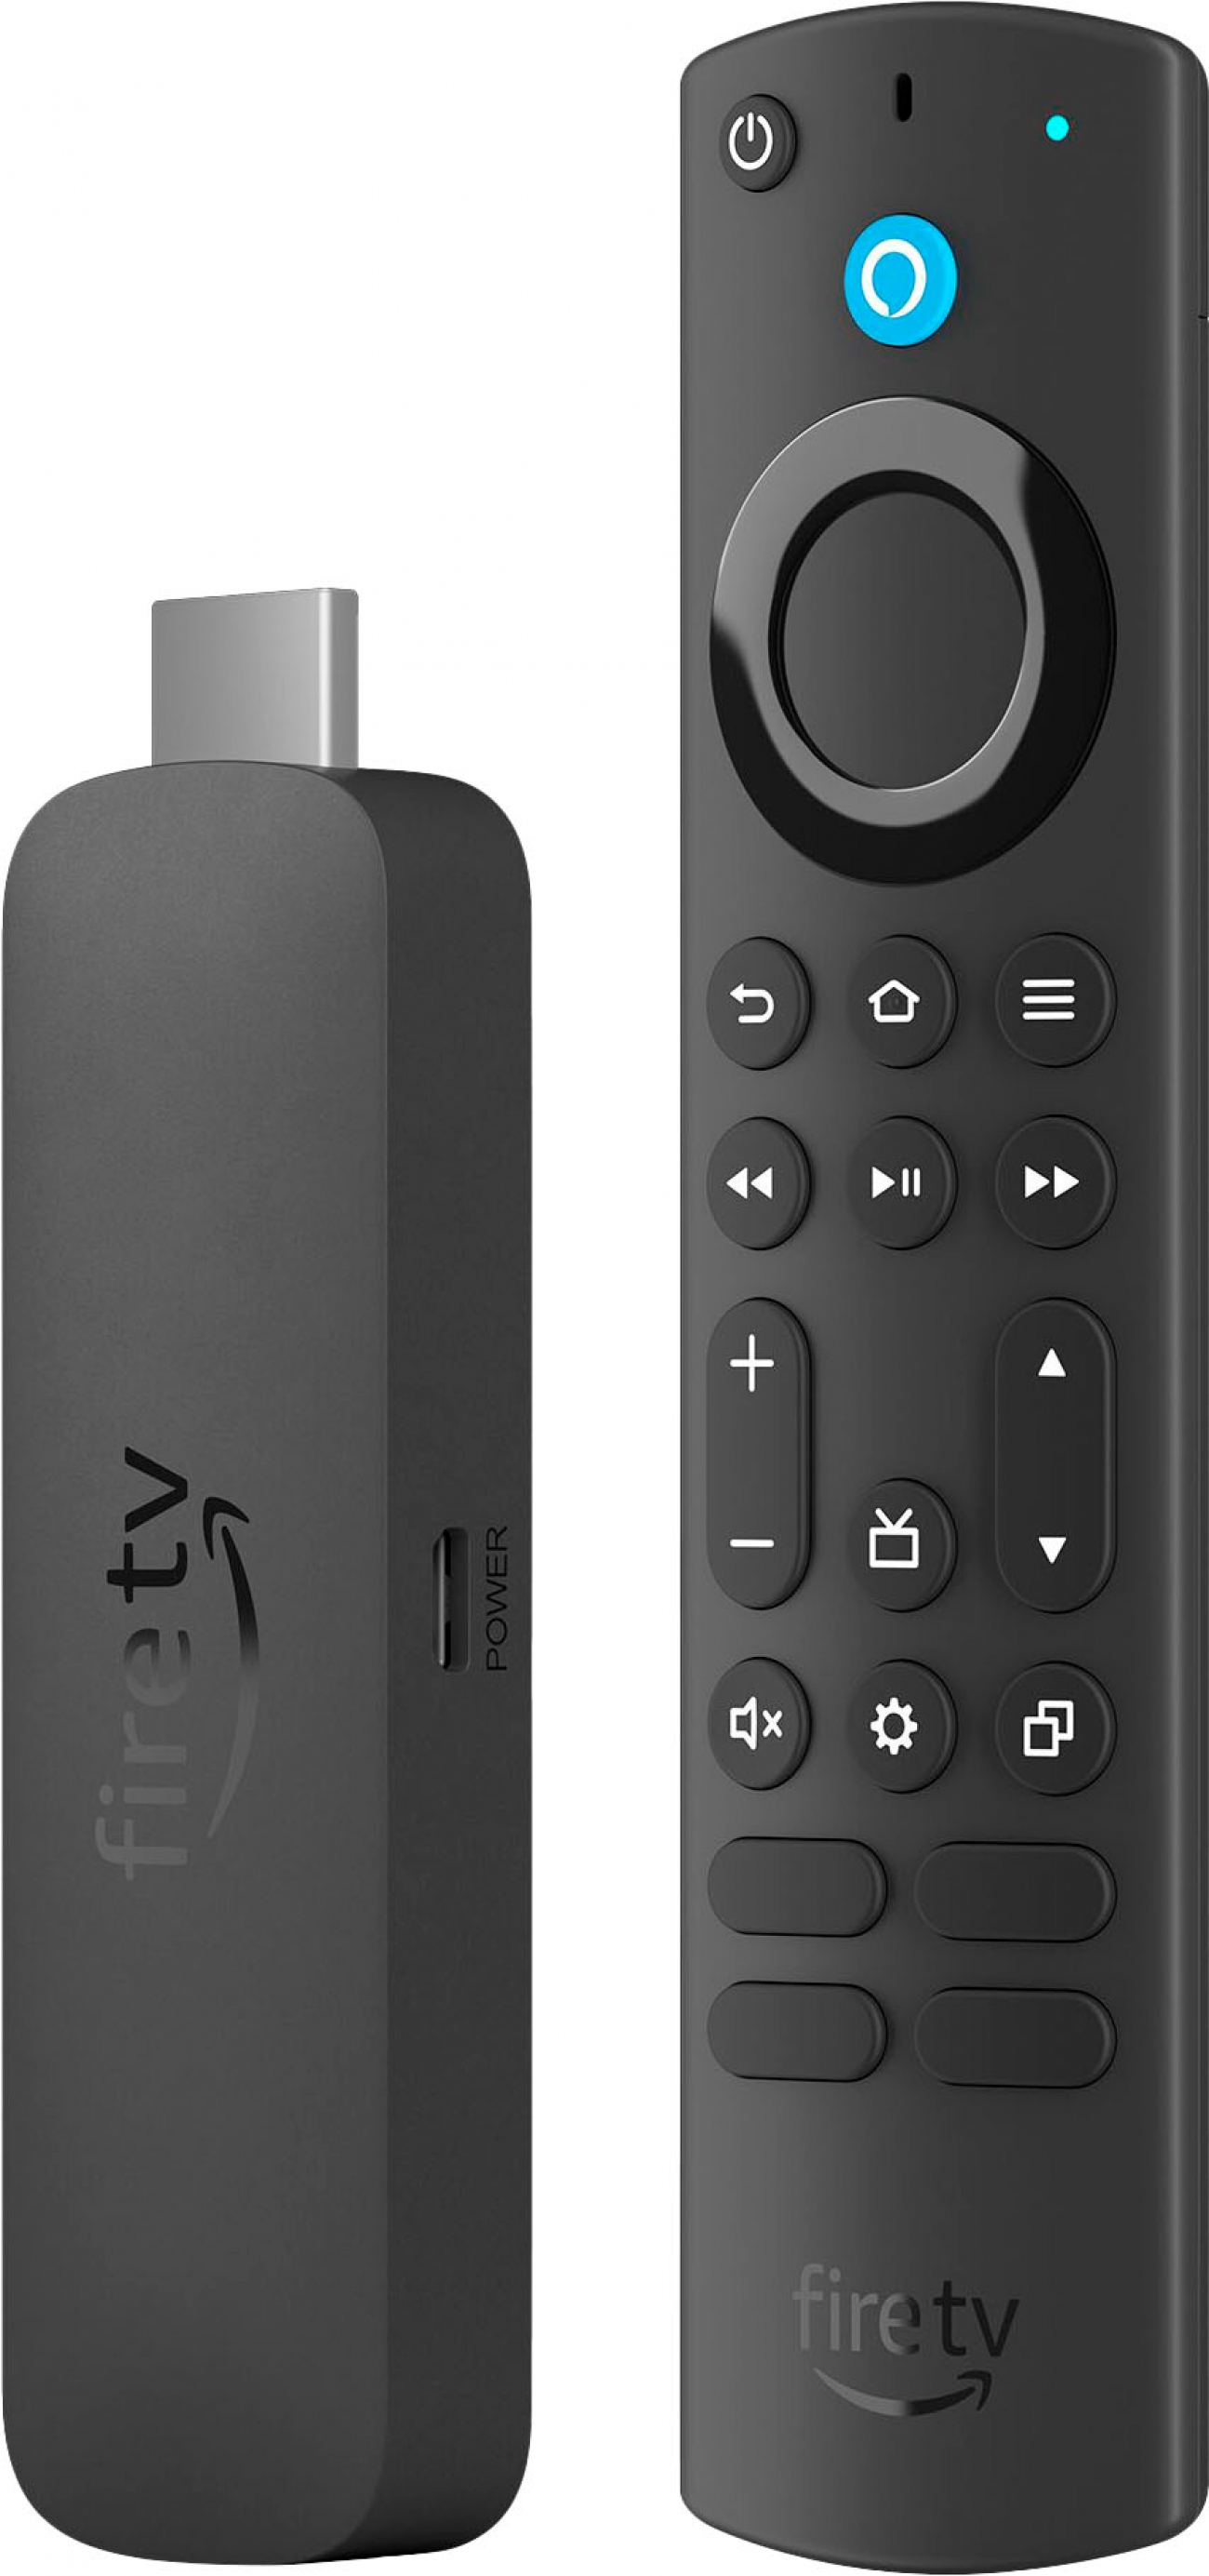 Amazon Fire TV Stick 4K Max Media Streamer w/Alexa voice remote